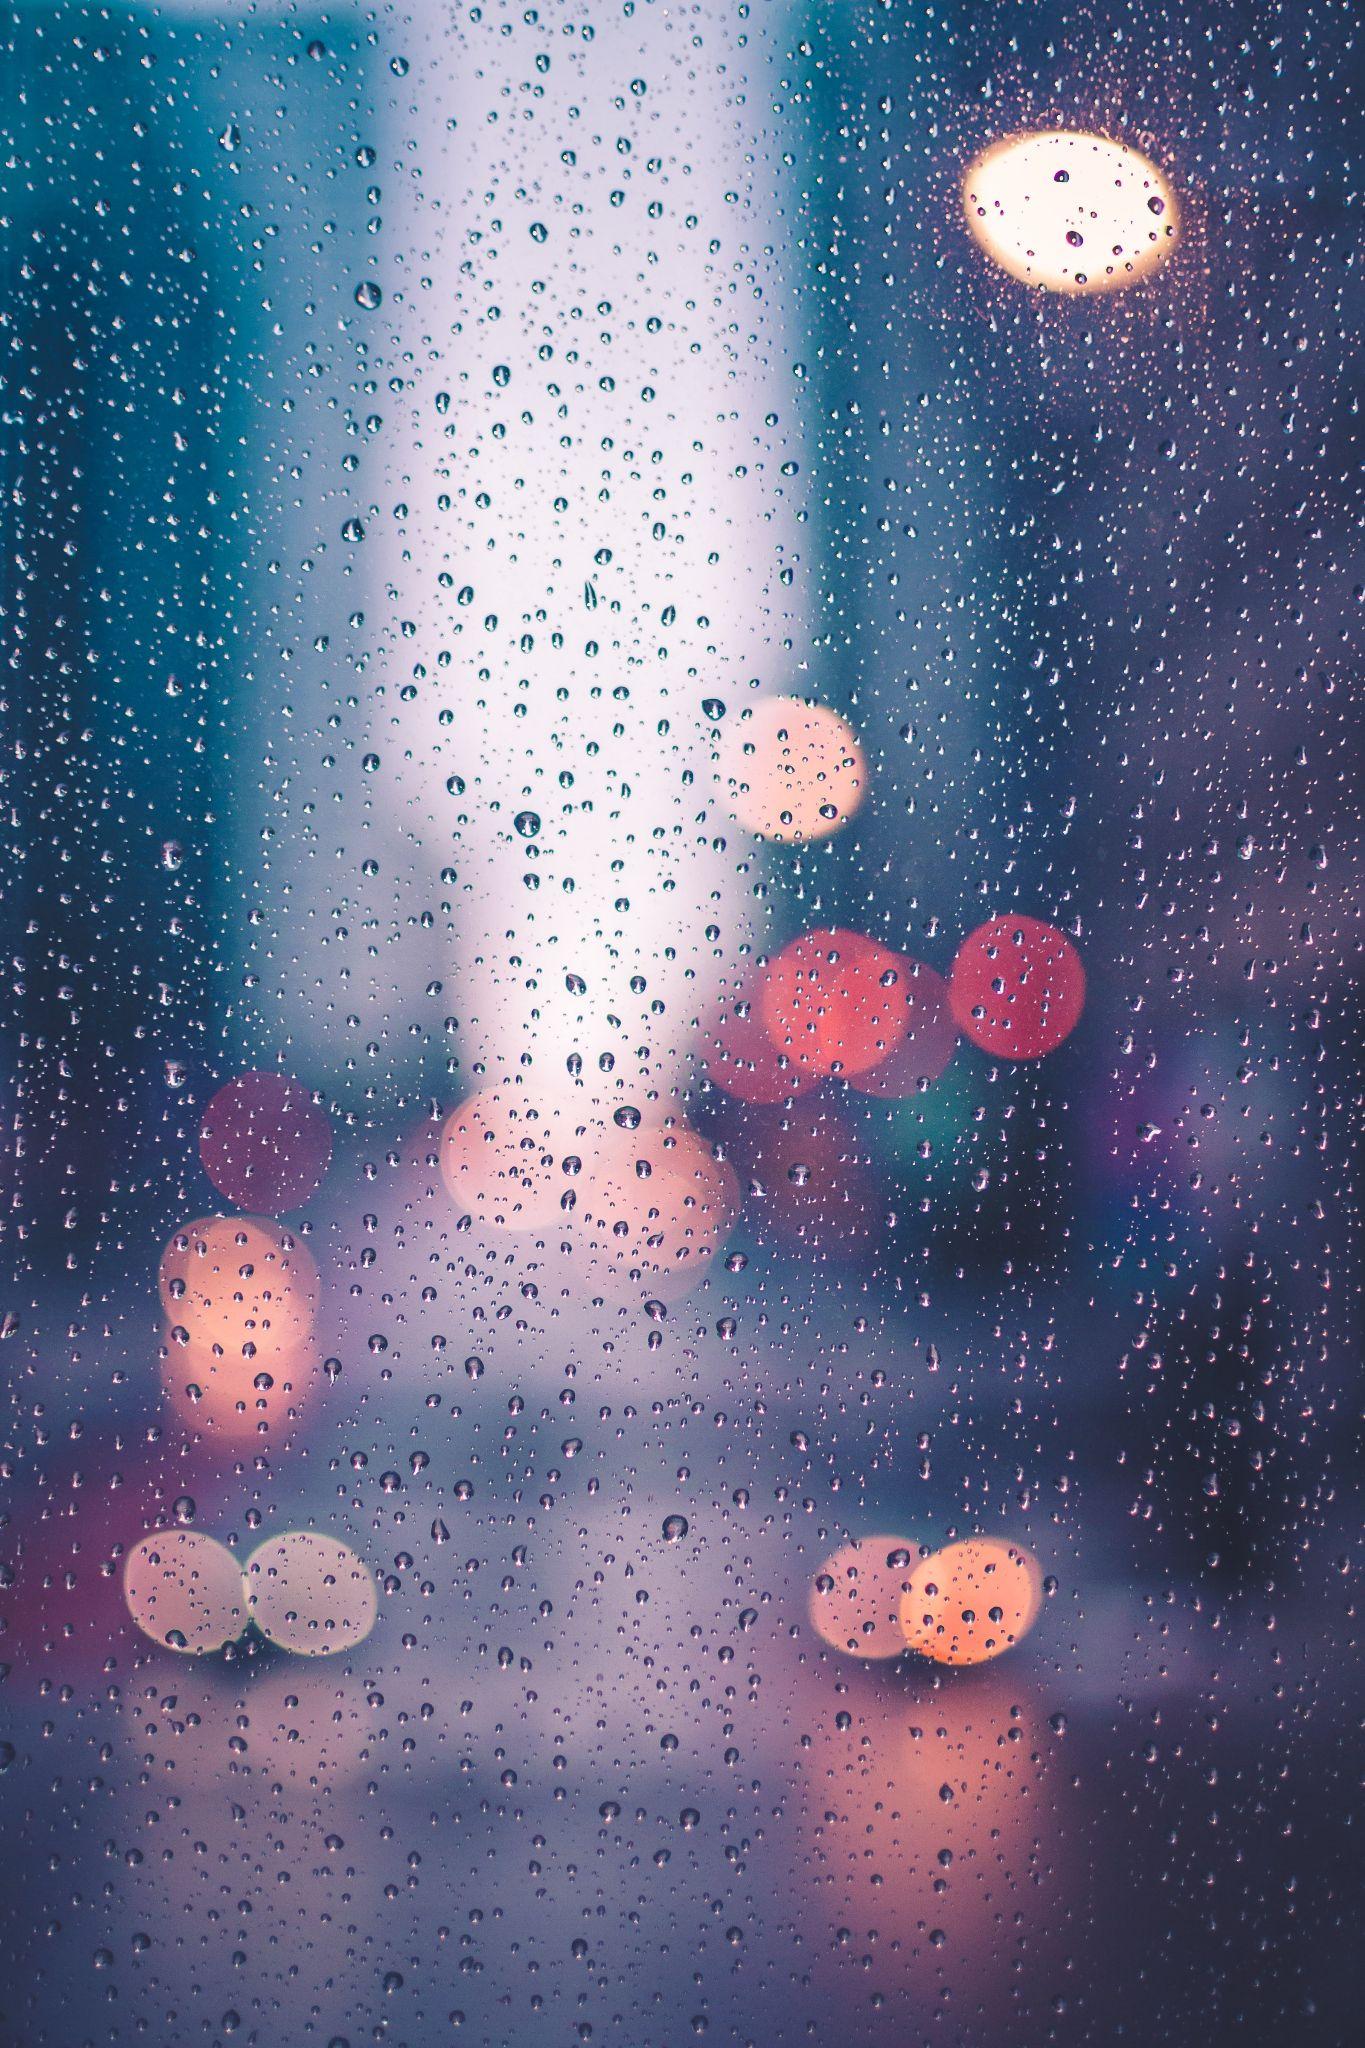 朦胧唯美的下雨天人物背影图片-千叶网